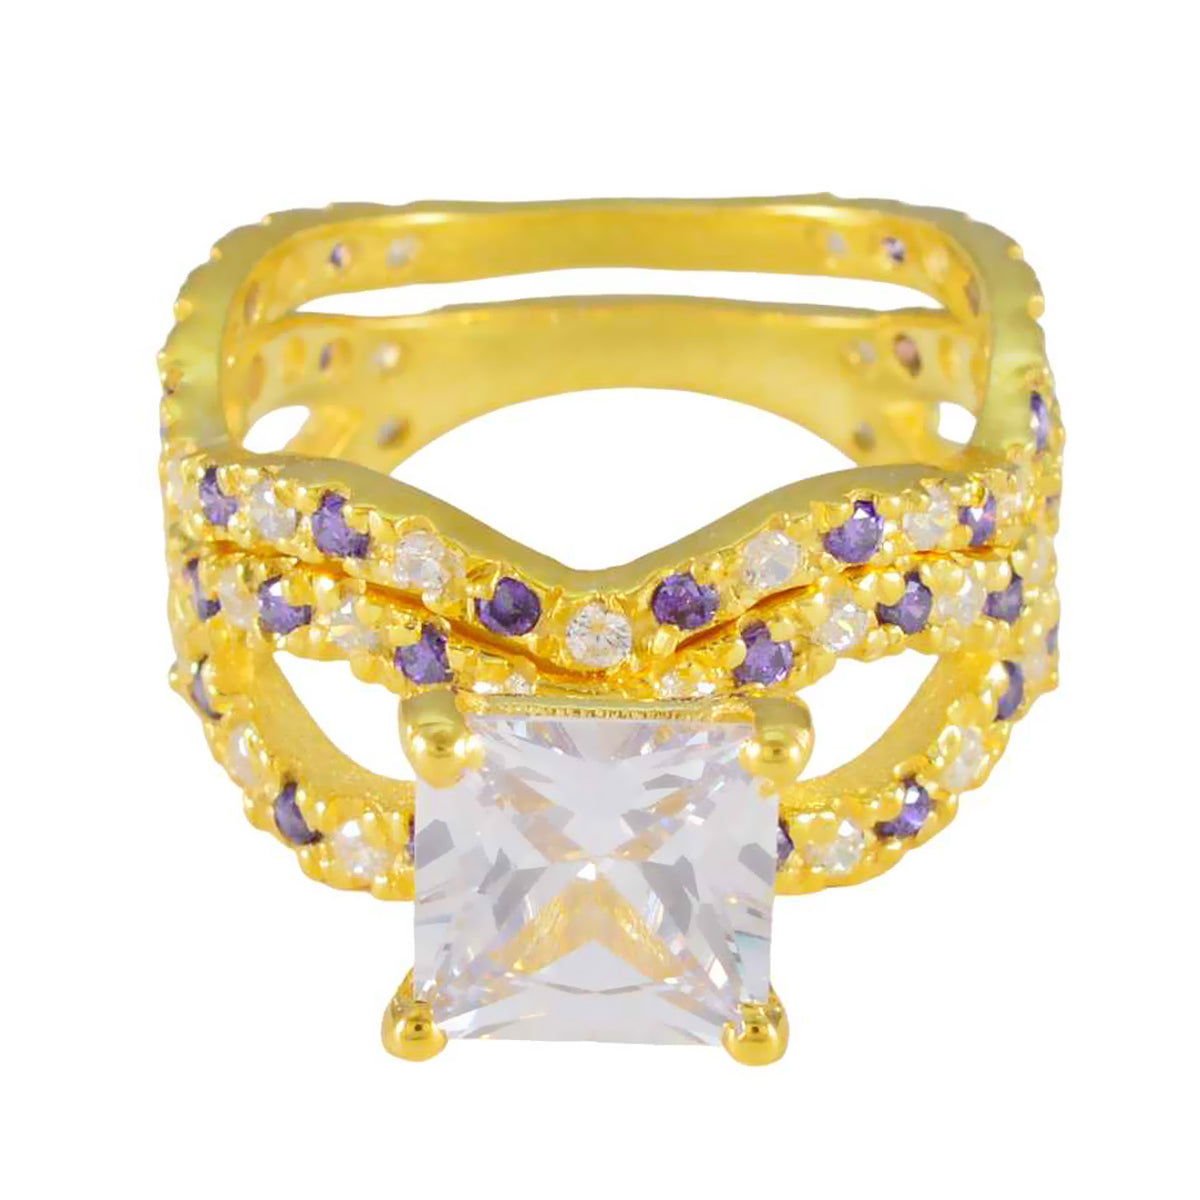 Encantador anillo de plata riyo con chapado en oro amarillo, piedra amatista, forma cuadrada, ajuste de punta, joyería hecha a mano, anillo de compromiso